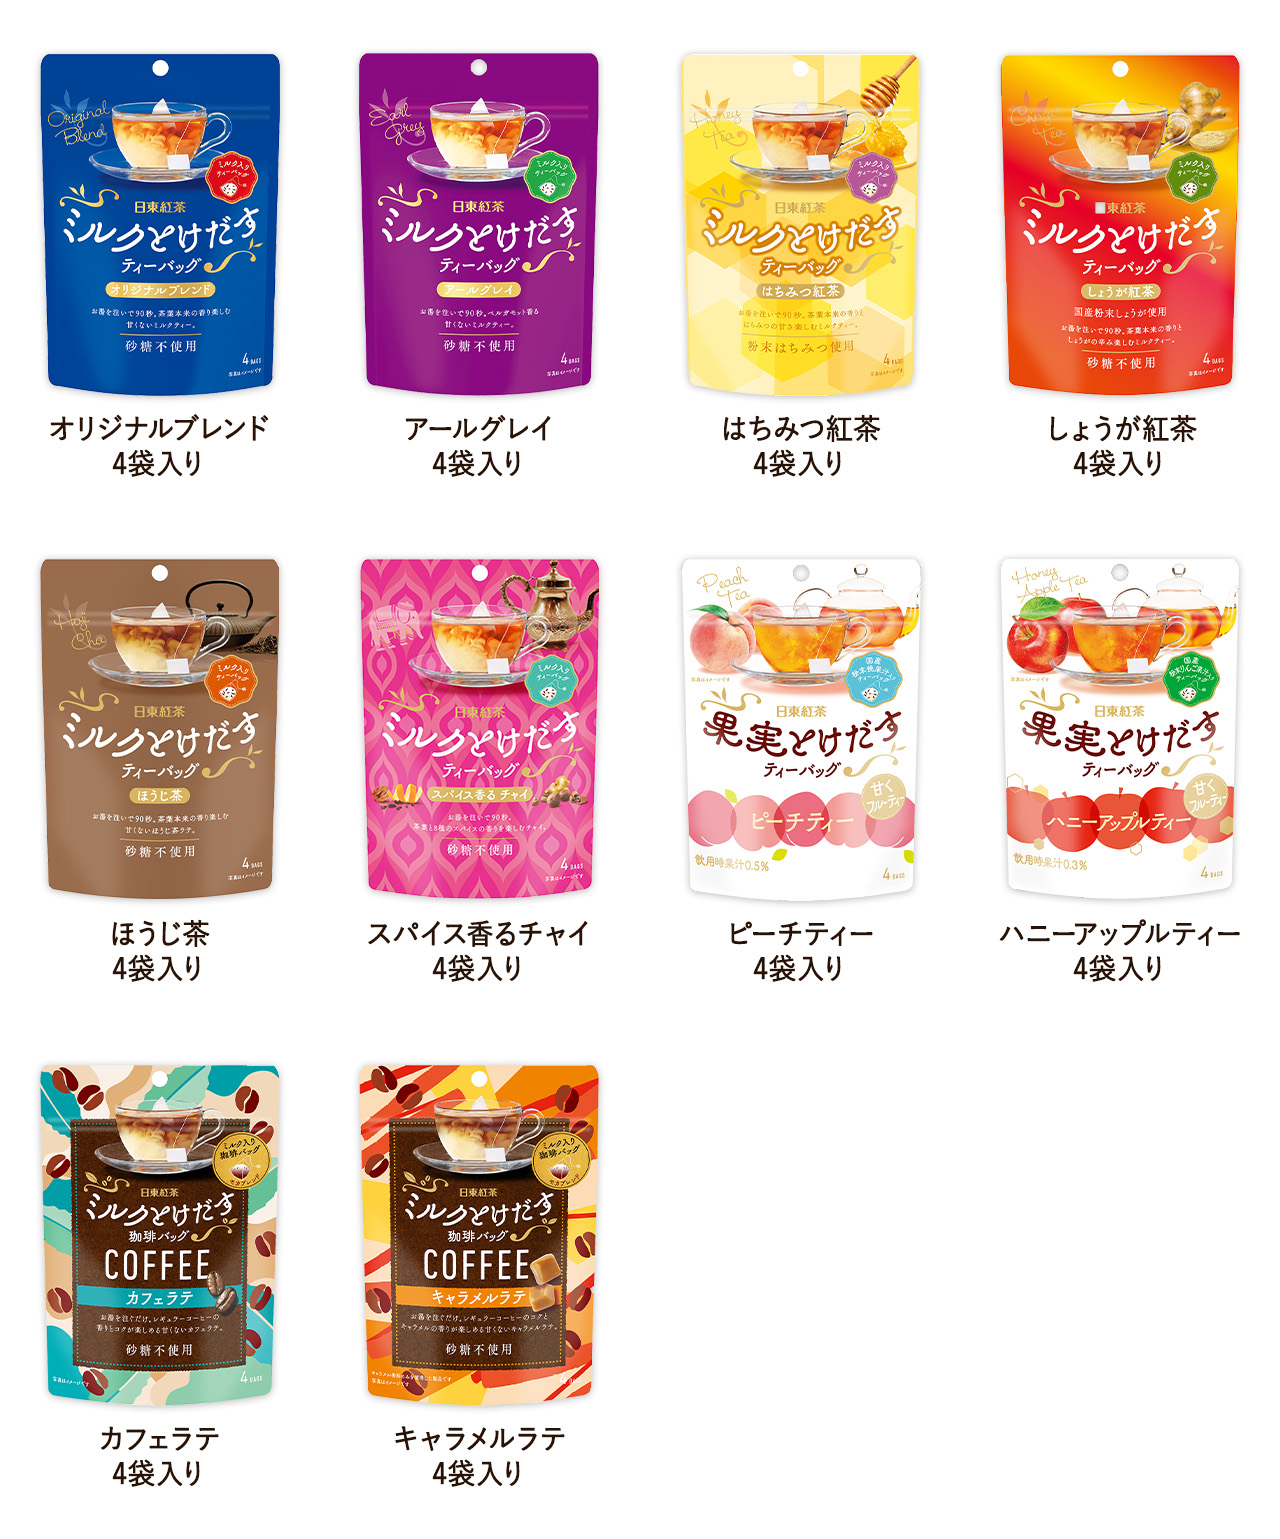 日東紅茶「ミルクとけだすティーバッグとホットに過ごそう♡」プレゼントキャンペーン対象商品